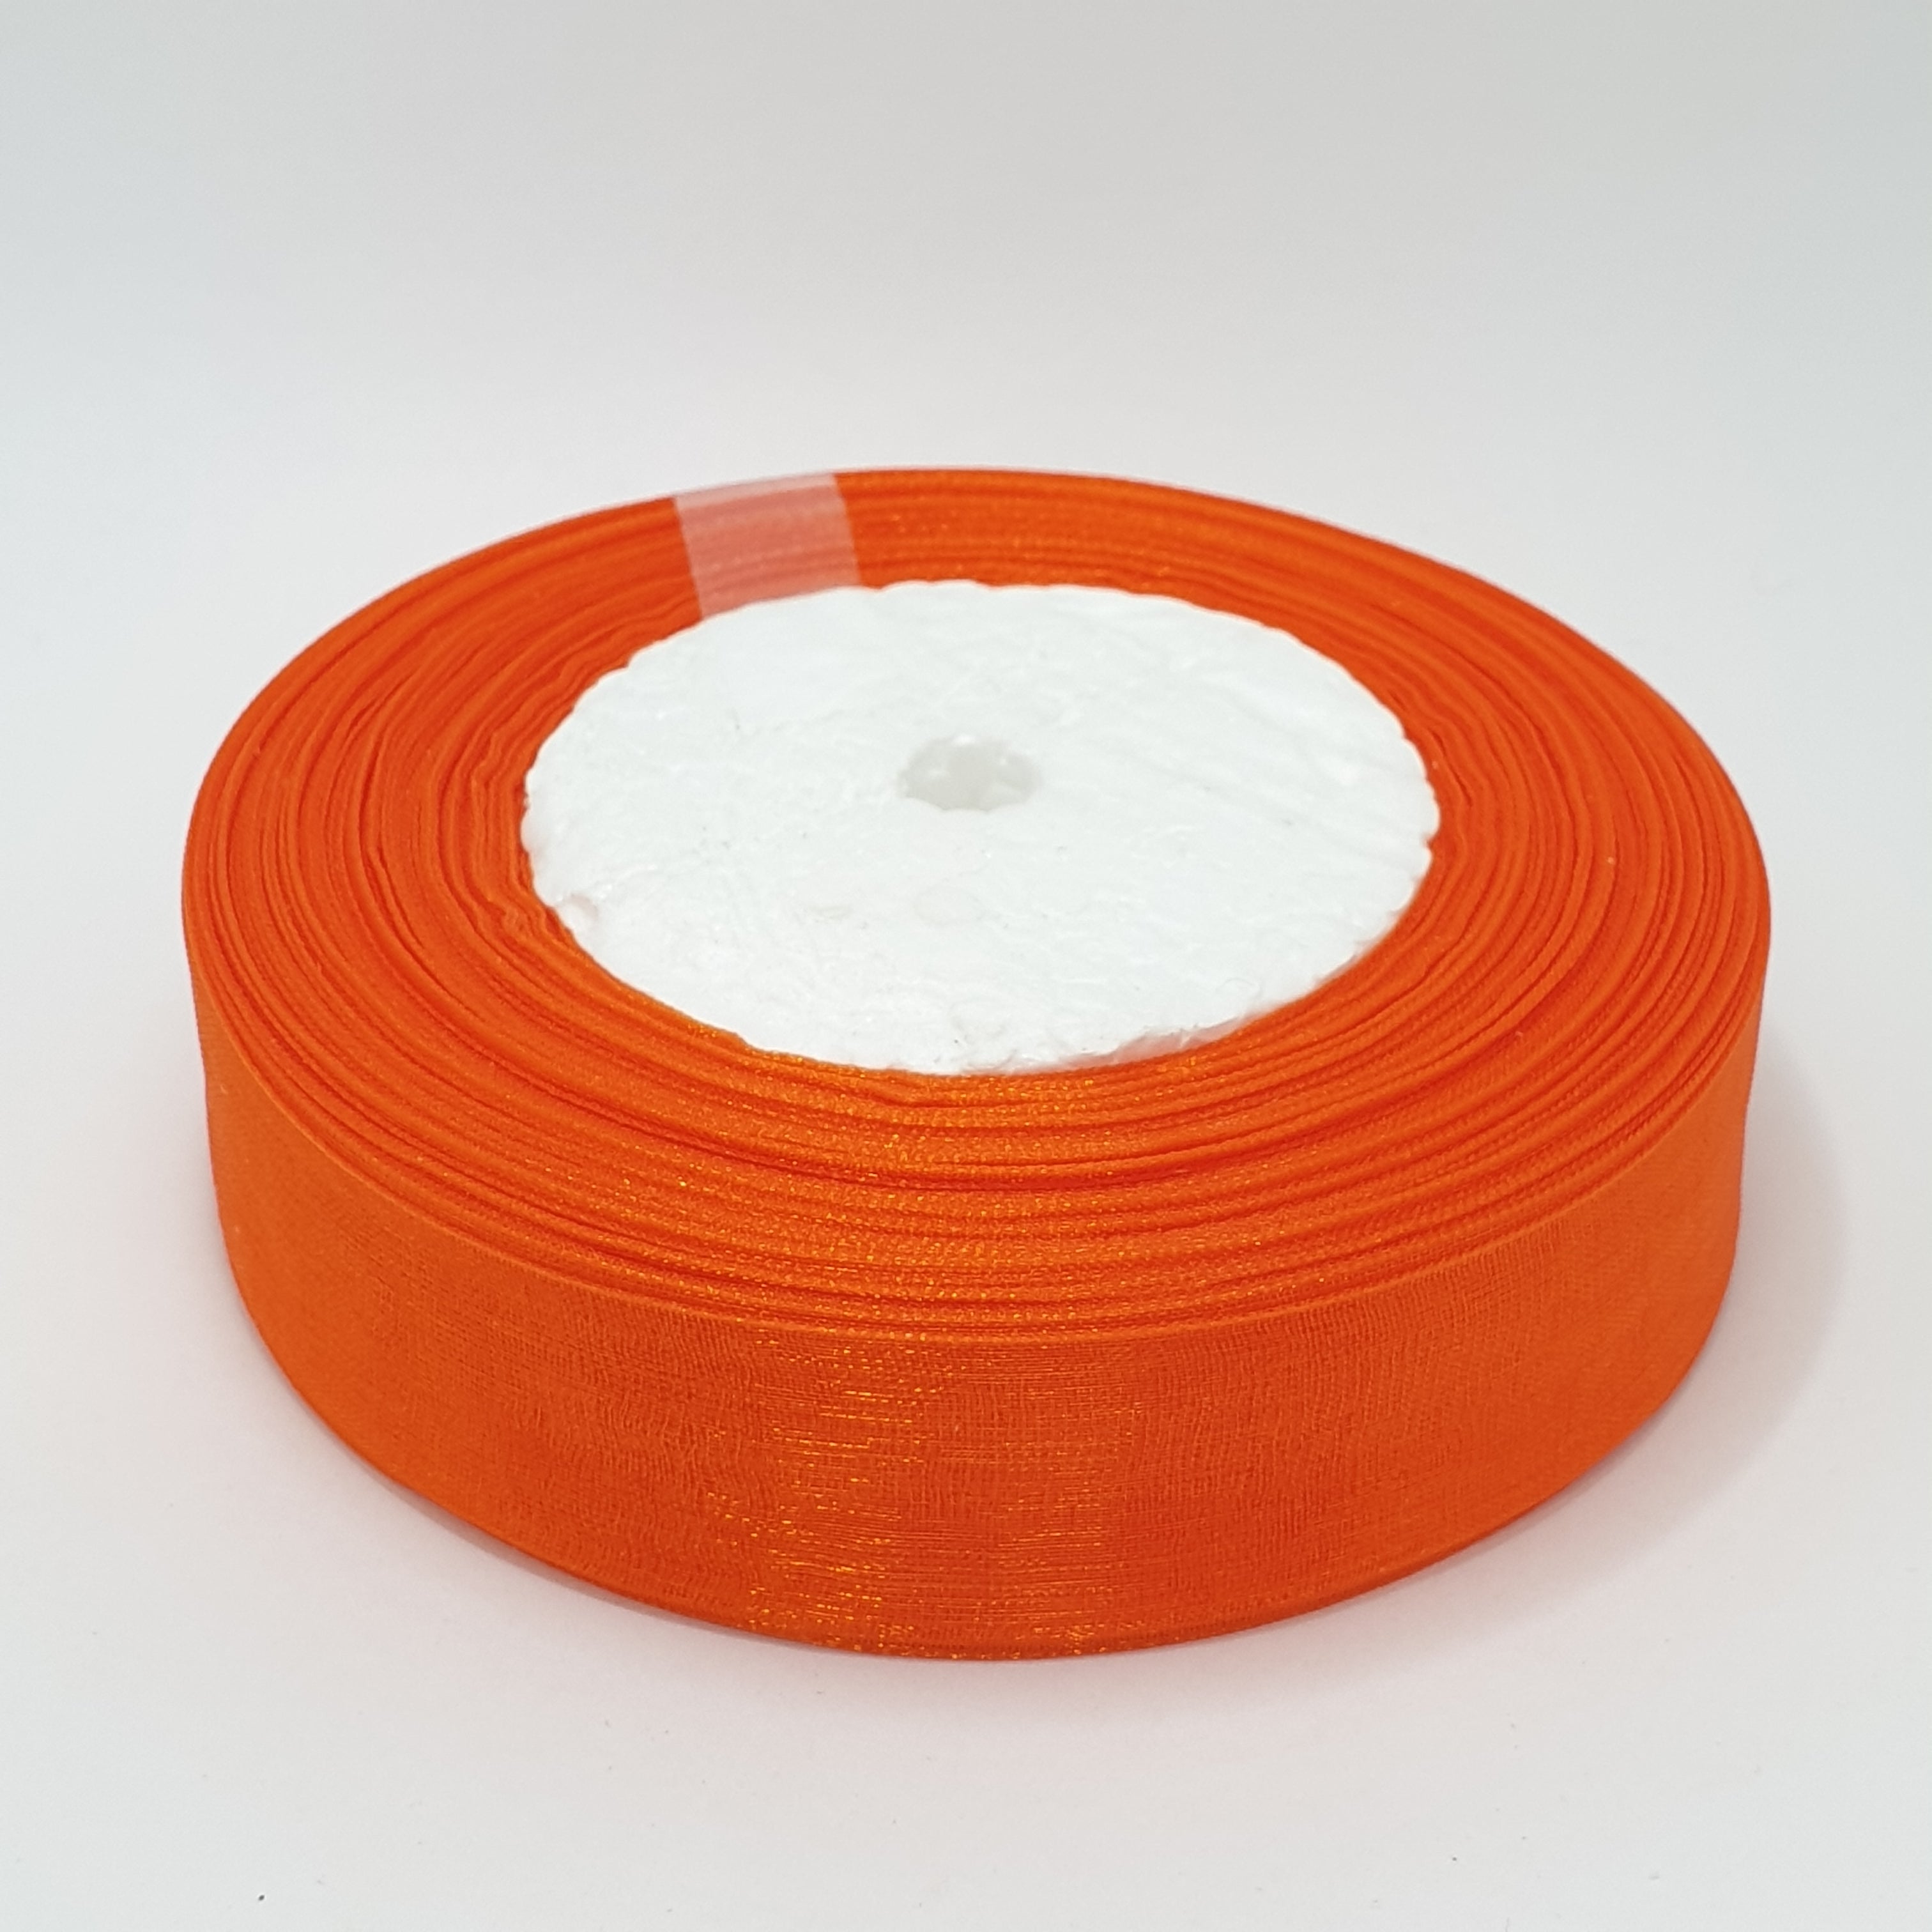 MajorCrafts 25mm 45metres Sheer Organza Fabric Ribbon Roll Orange Shade R1025